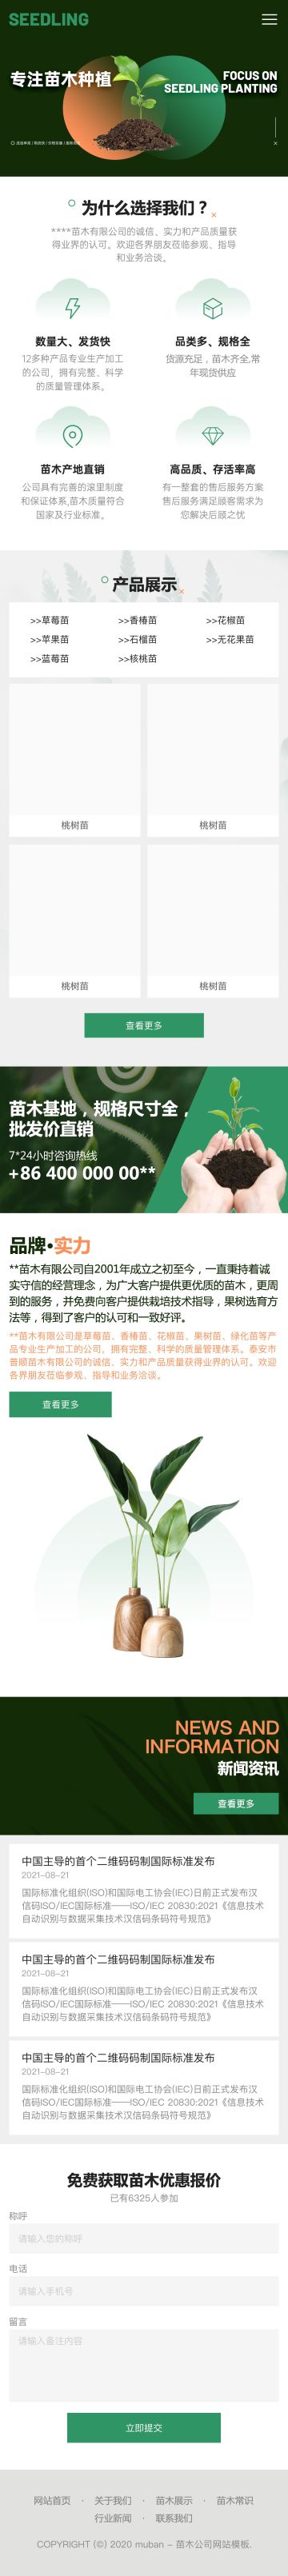 专业绿色种植企业官网